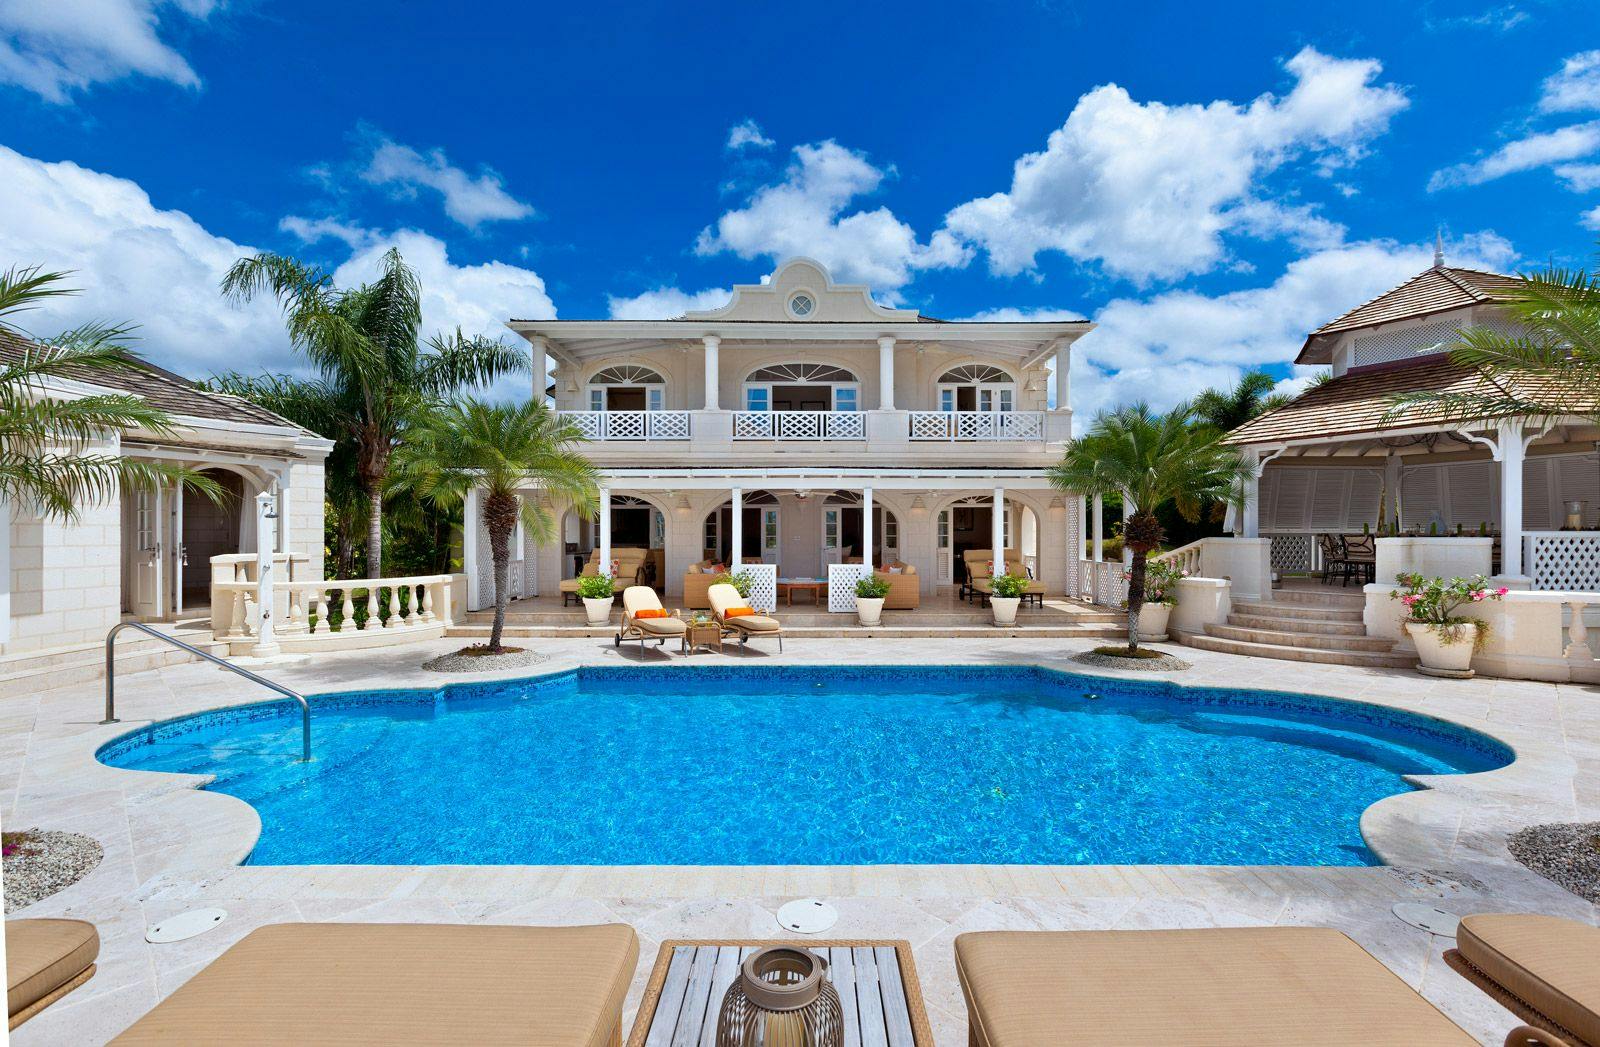 Half Century House - Sugar Hill Barbados villa